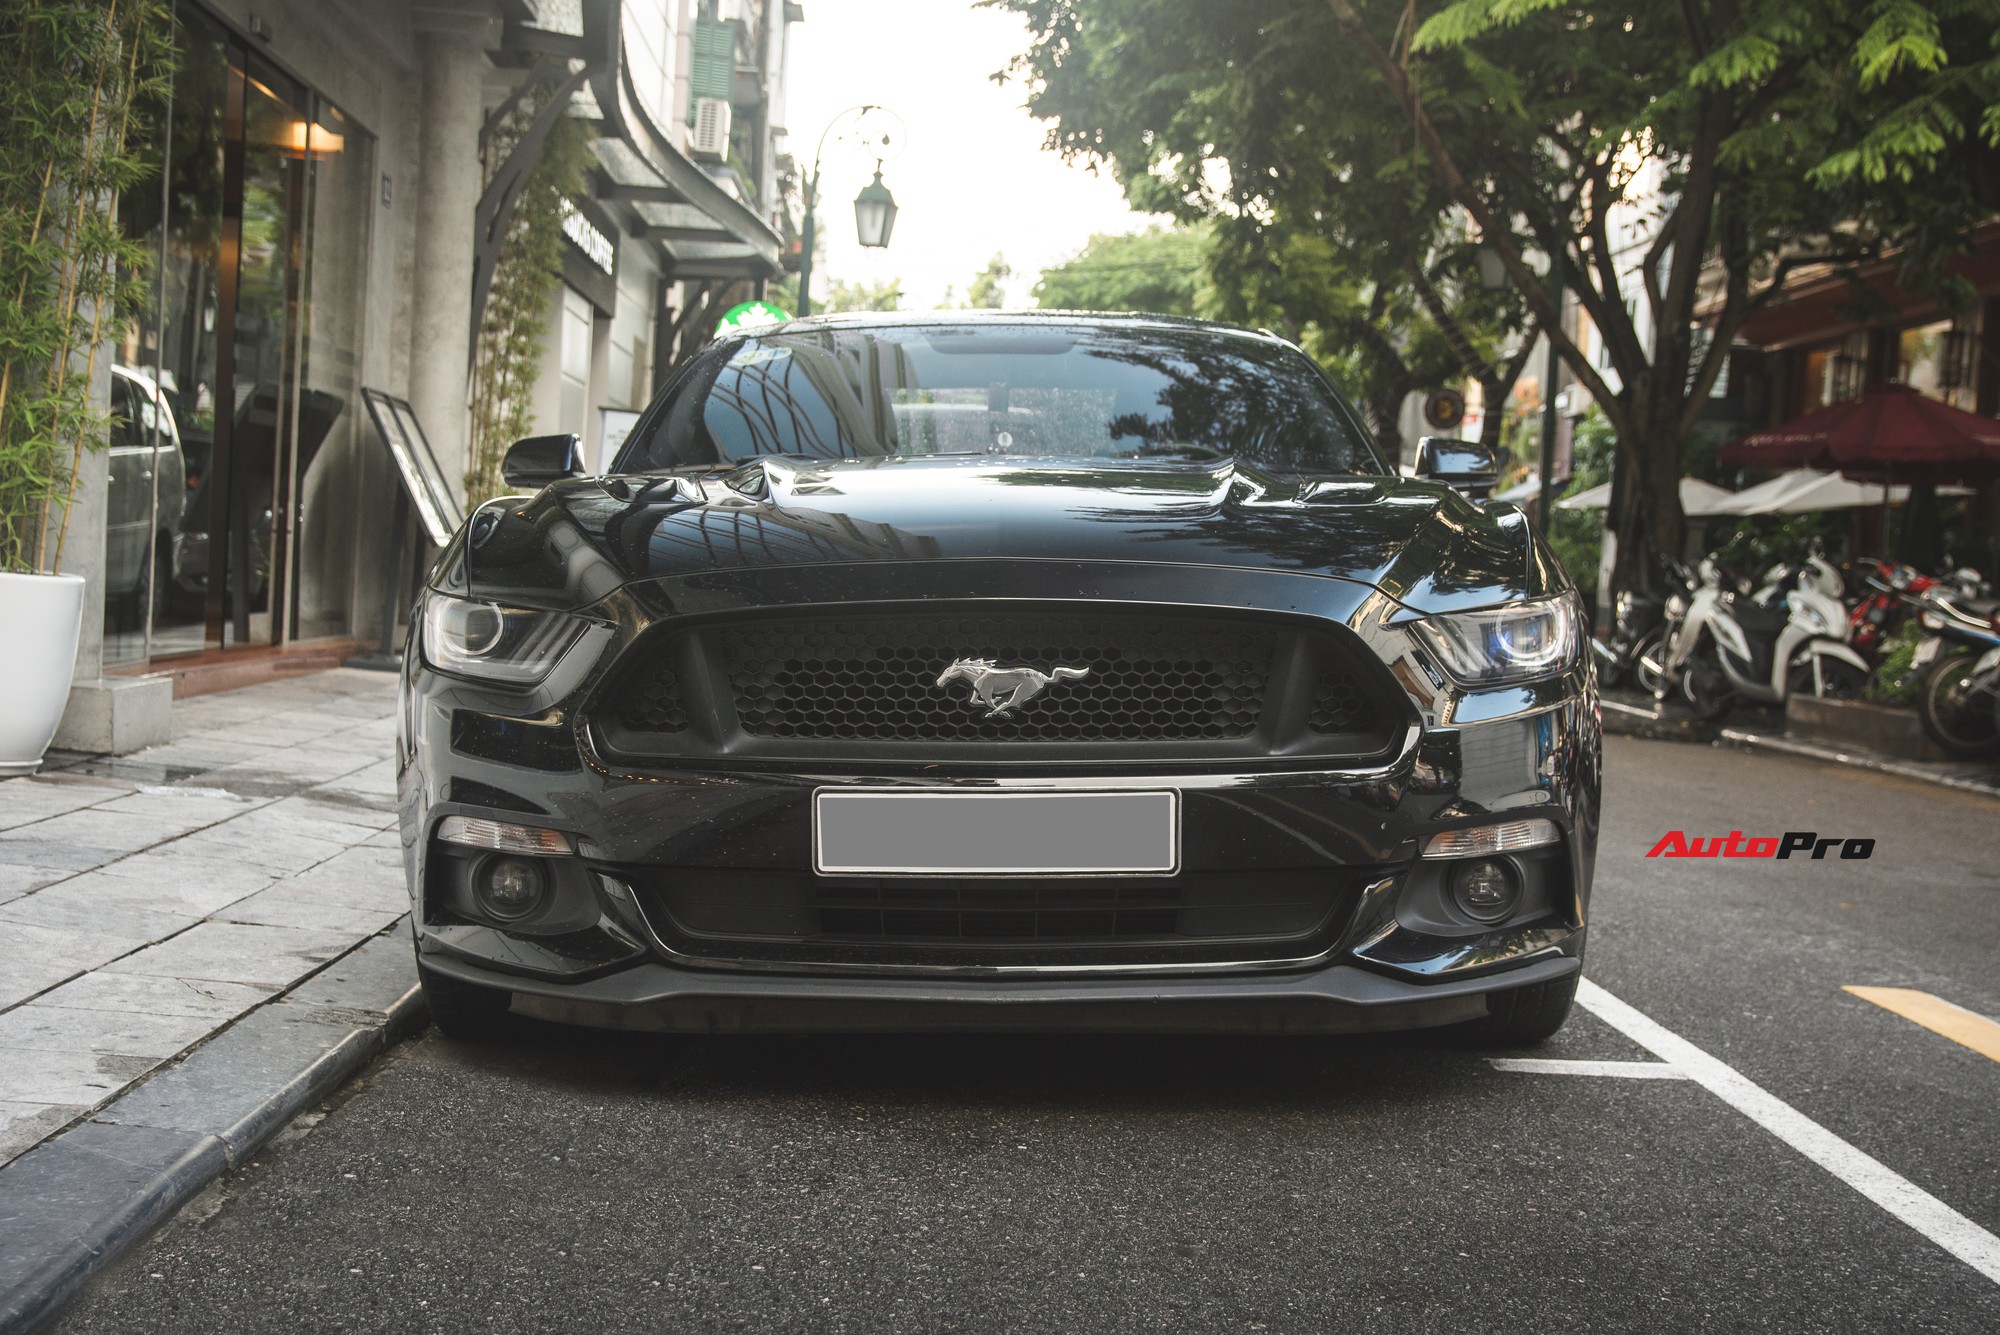 Ford Mustang GT 2017 - chiếc xe hơi hạng sang đến từ Mỹ, với thiết kế tuyệt đẹp, cùng với động cơ mạnh mẽ, đắt giá sẽ khiến bạn phải say đắm. Hãy xem hình ảnh liên quan để khám phá những tính năng nổi bật của chiếc xe đẳng cấp này và cảm nhận sự thú vị khi ngắm nhìn nó.